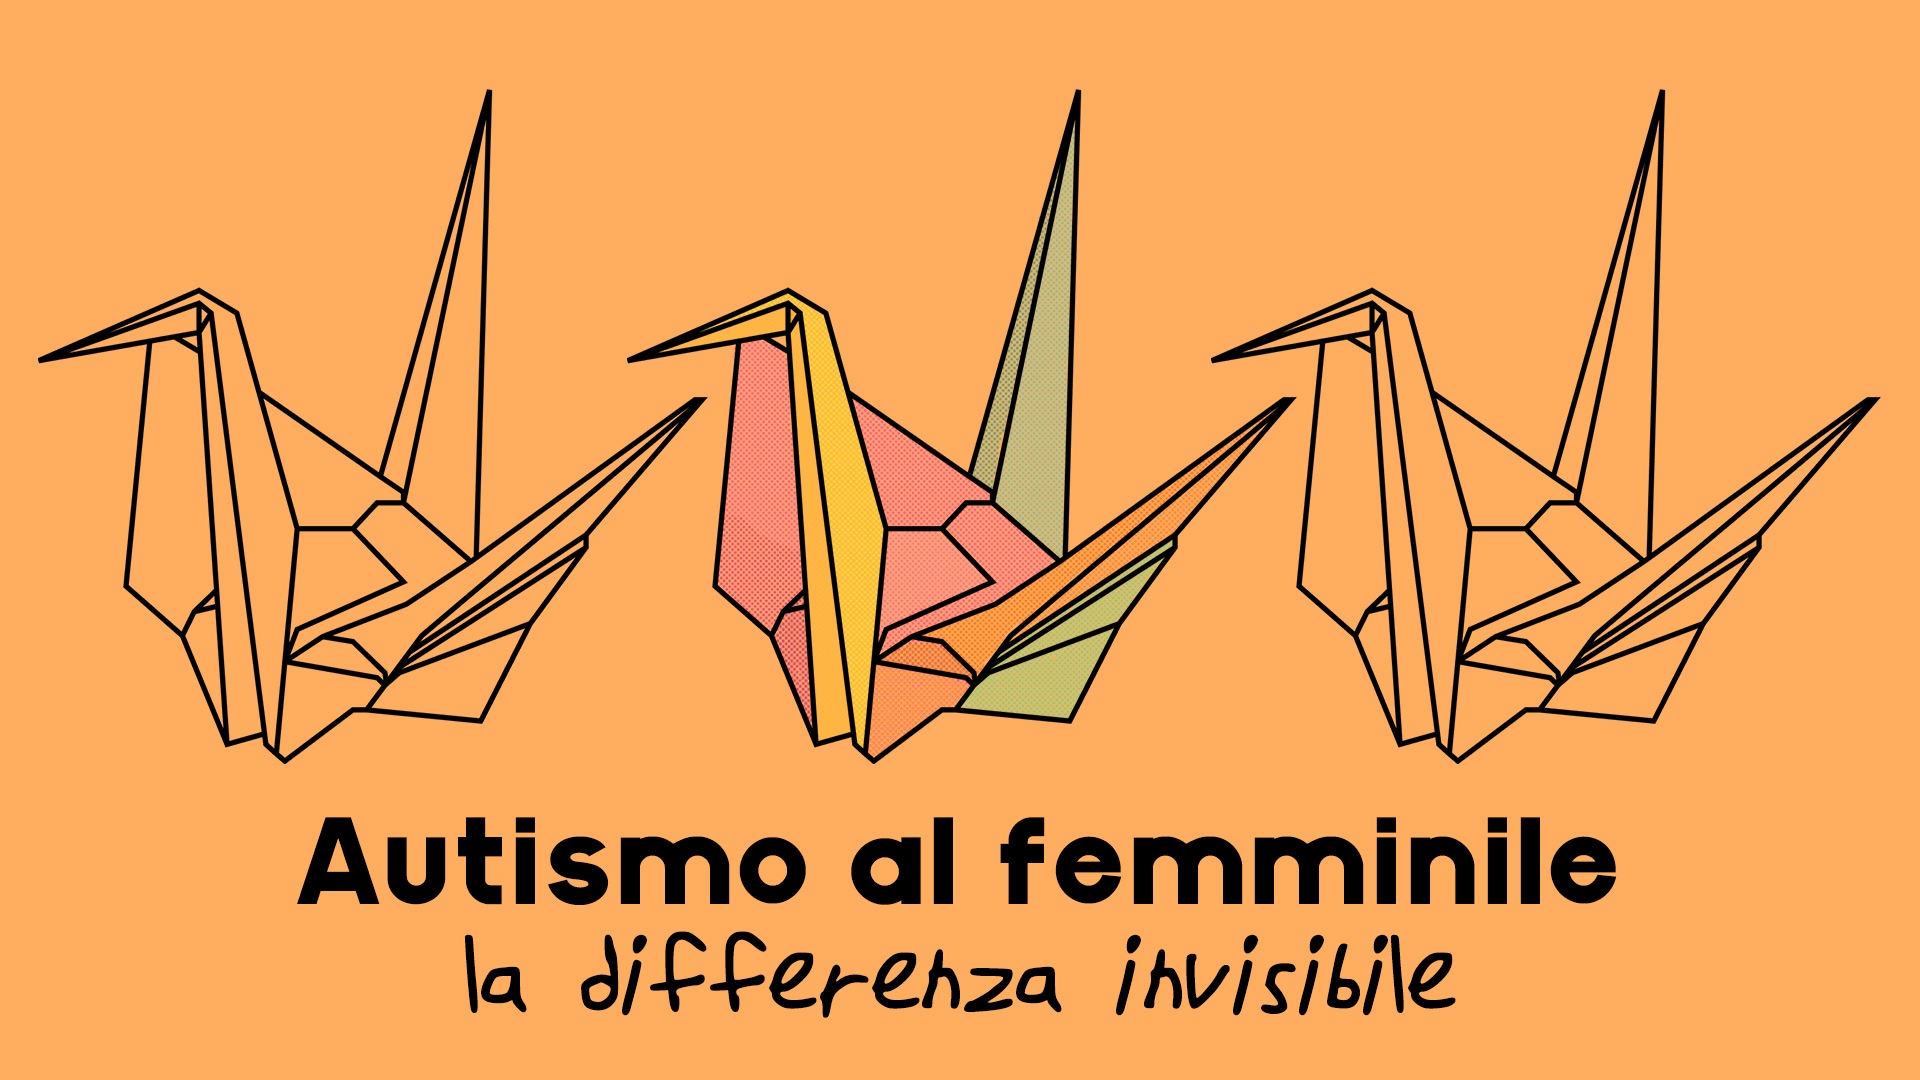 Autismo al femminile: la differenza invisibile